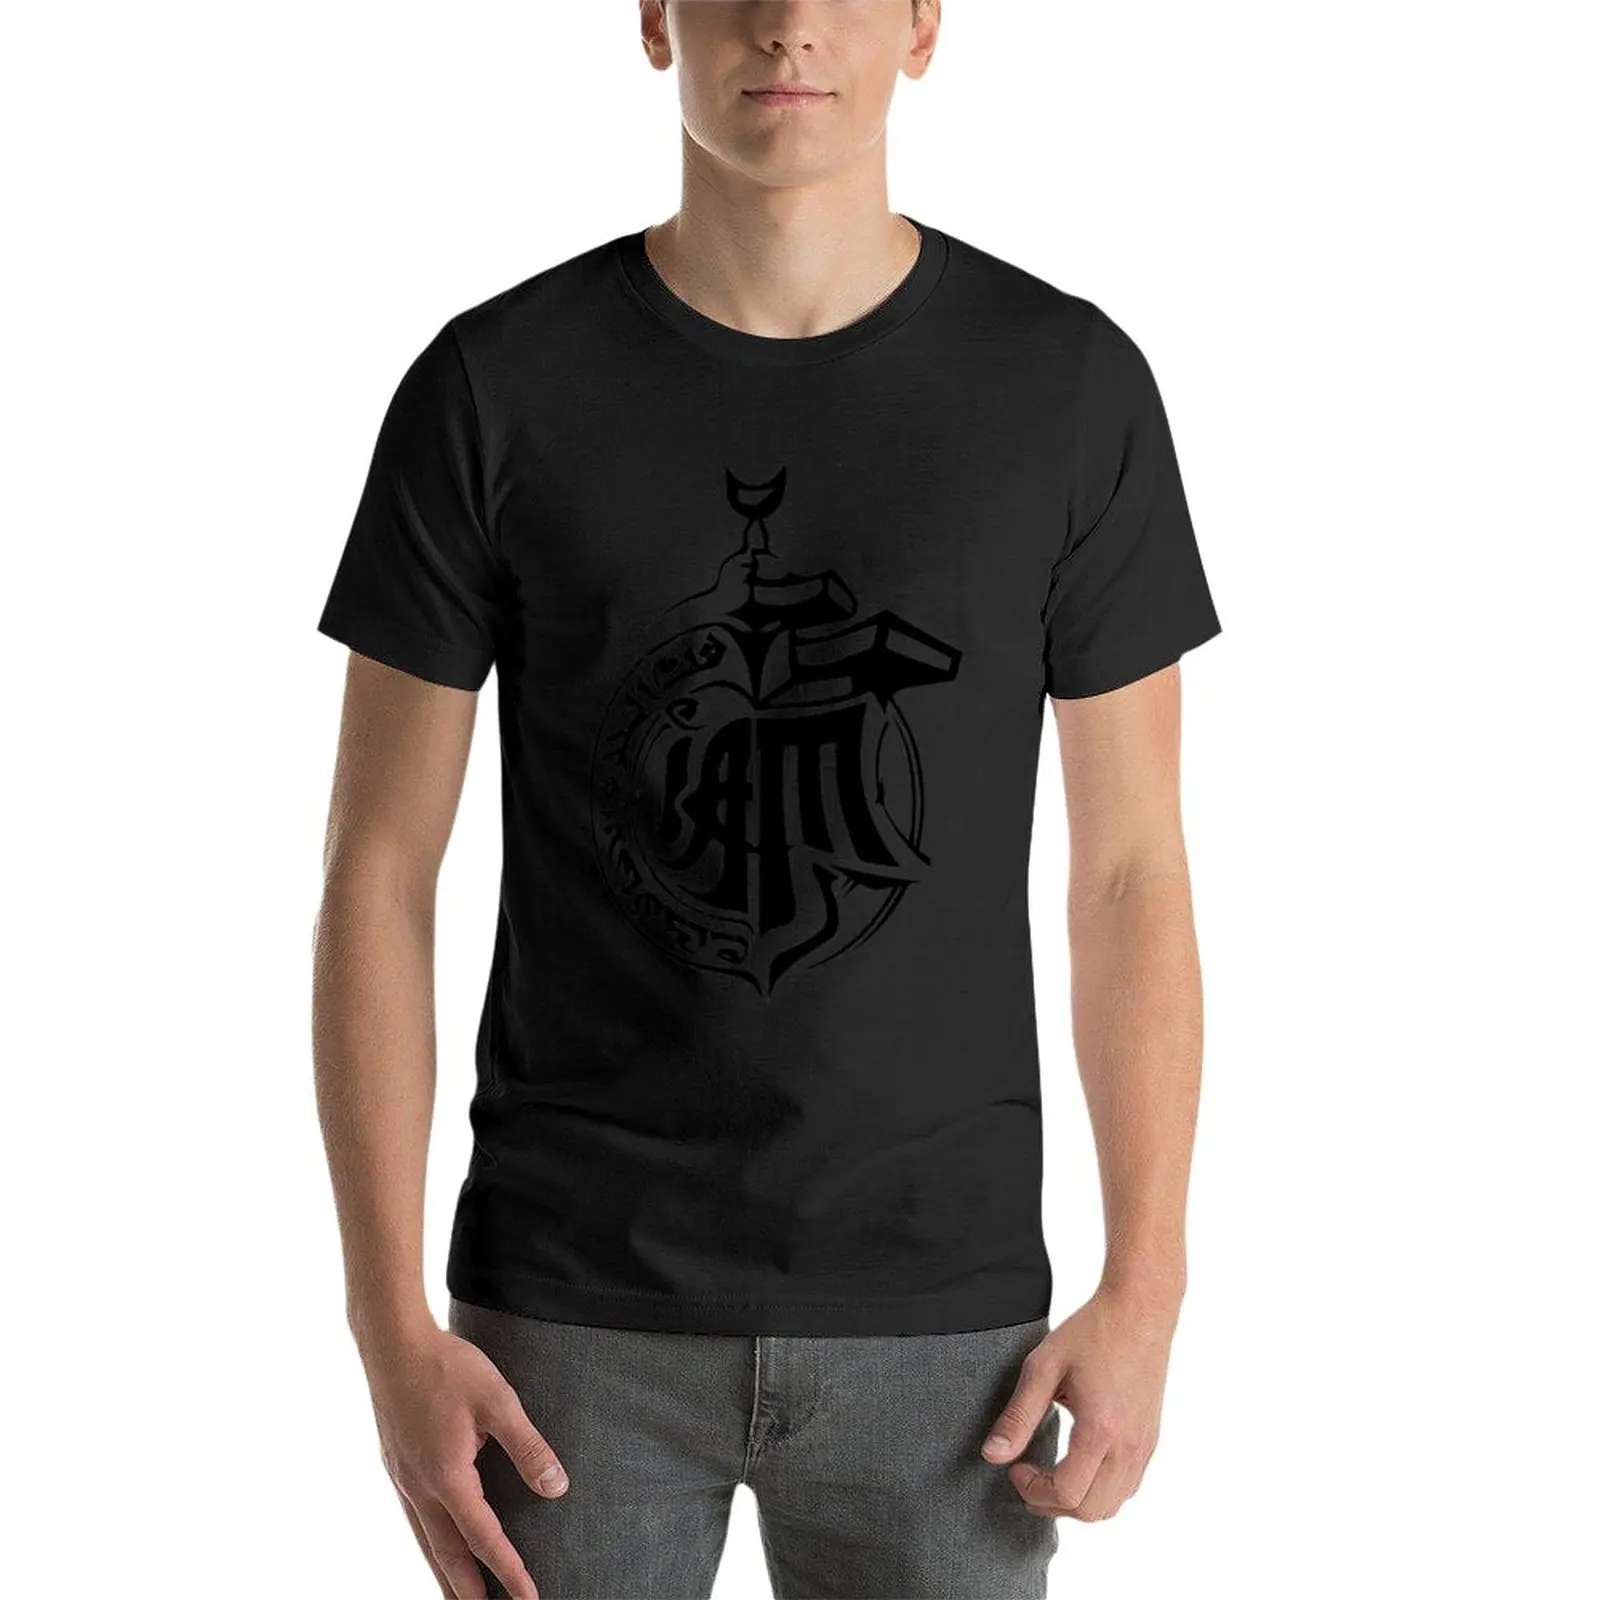 Новая коллекция IAM French Hip Hop Rap Marseille - Saison 5 - Черная футболка, аниме одежда, футболки для мужчин, упаковка Изображение 2